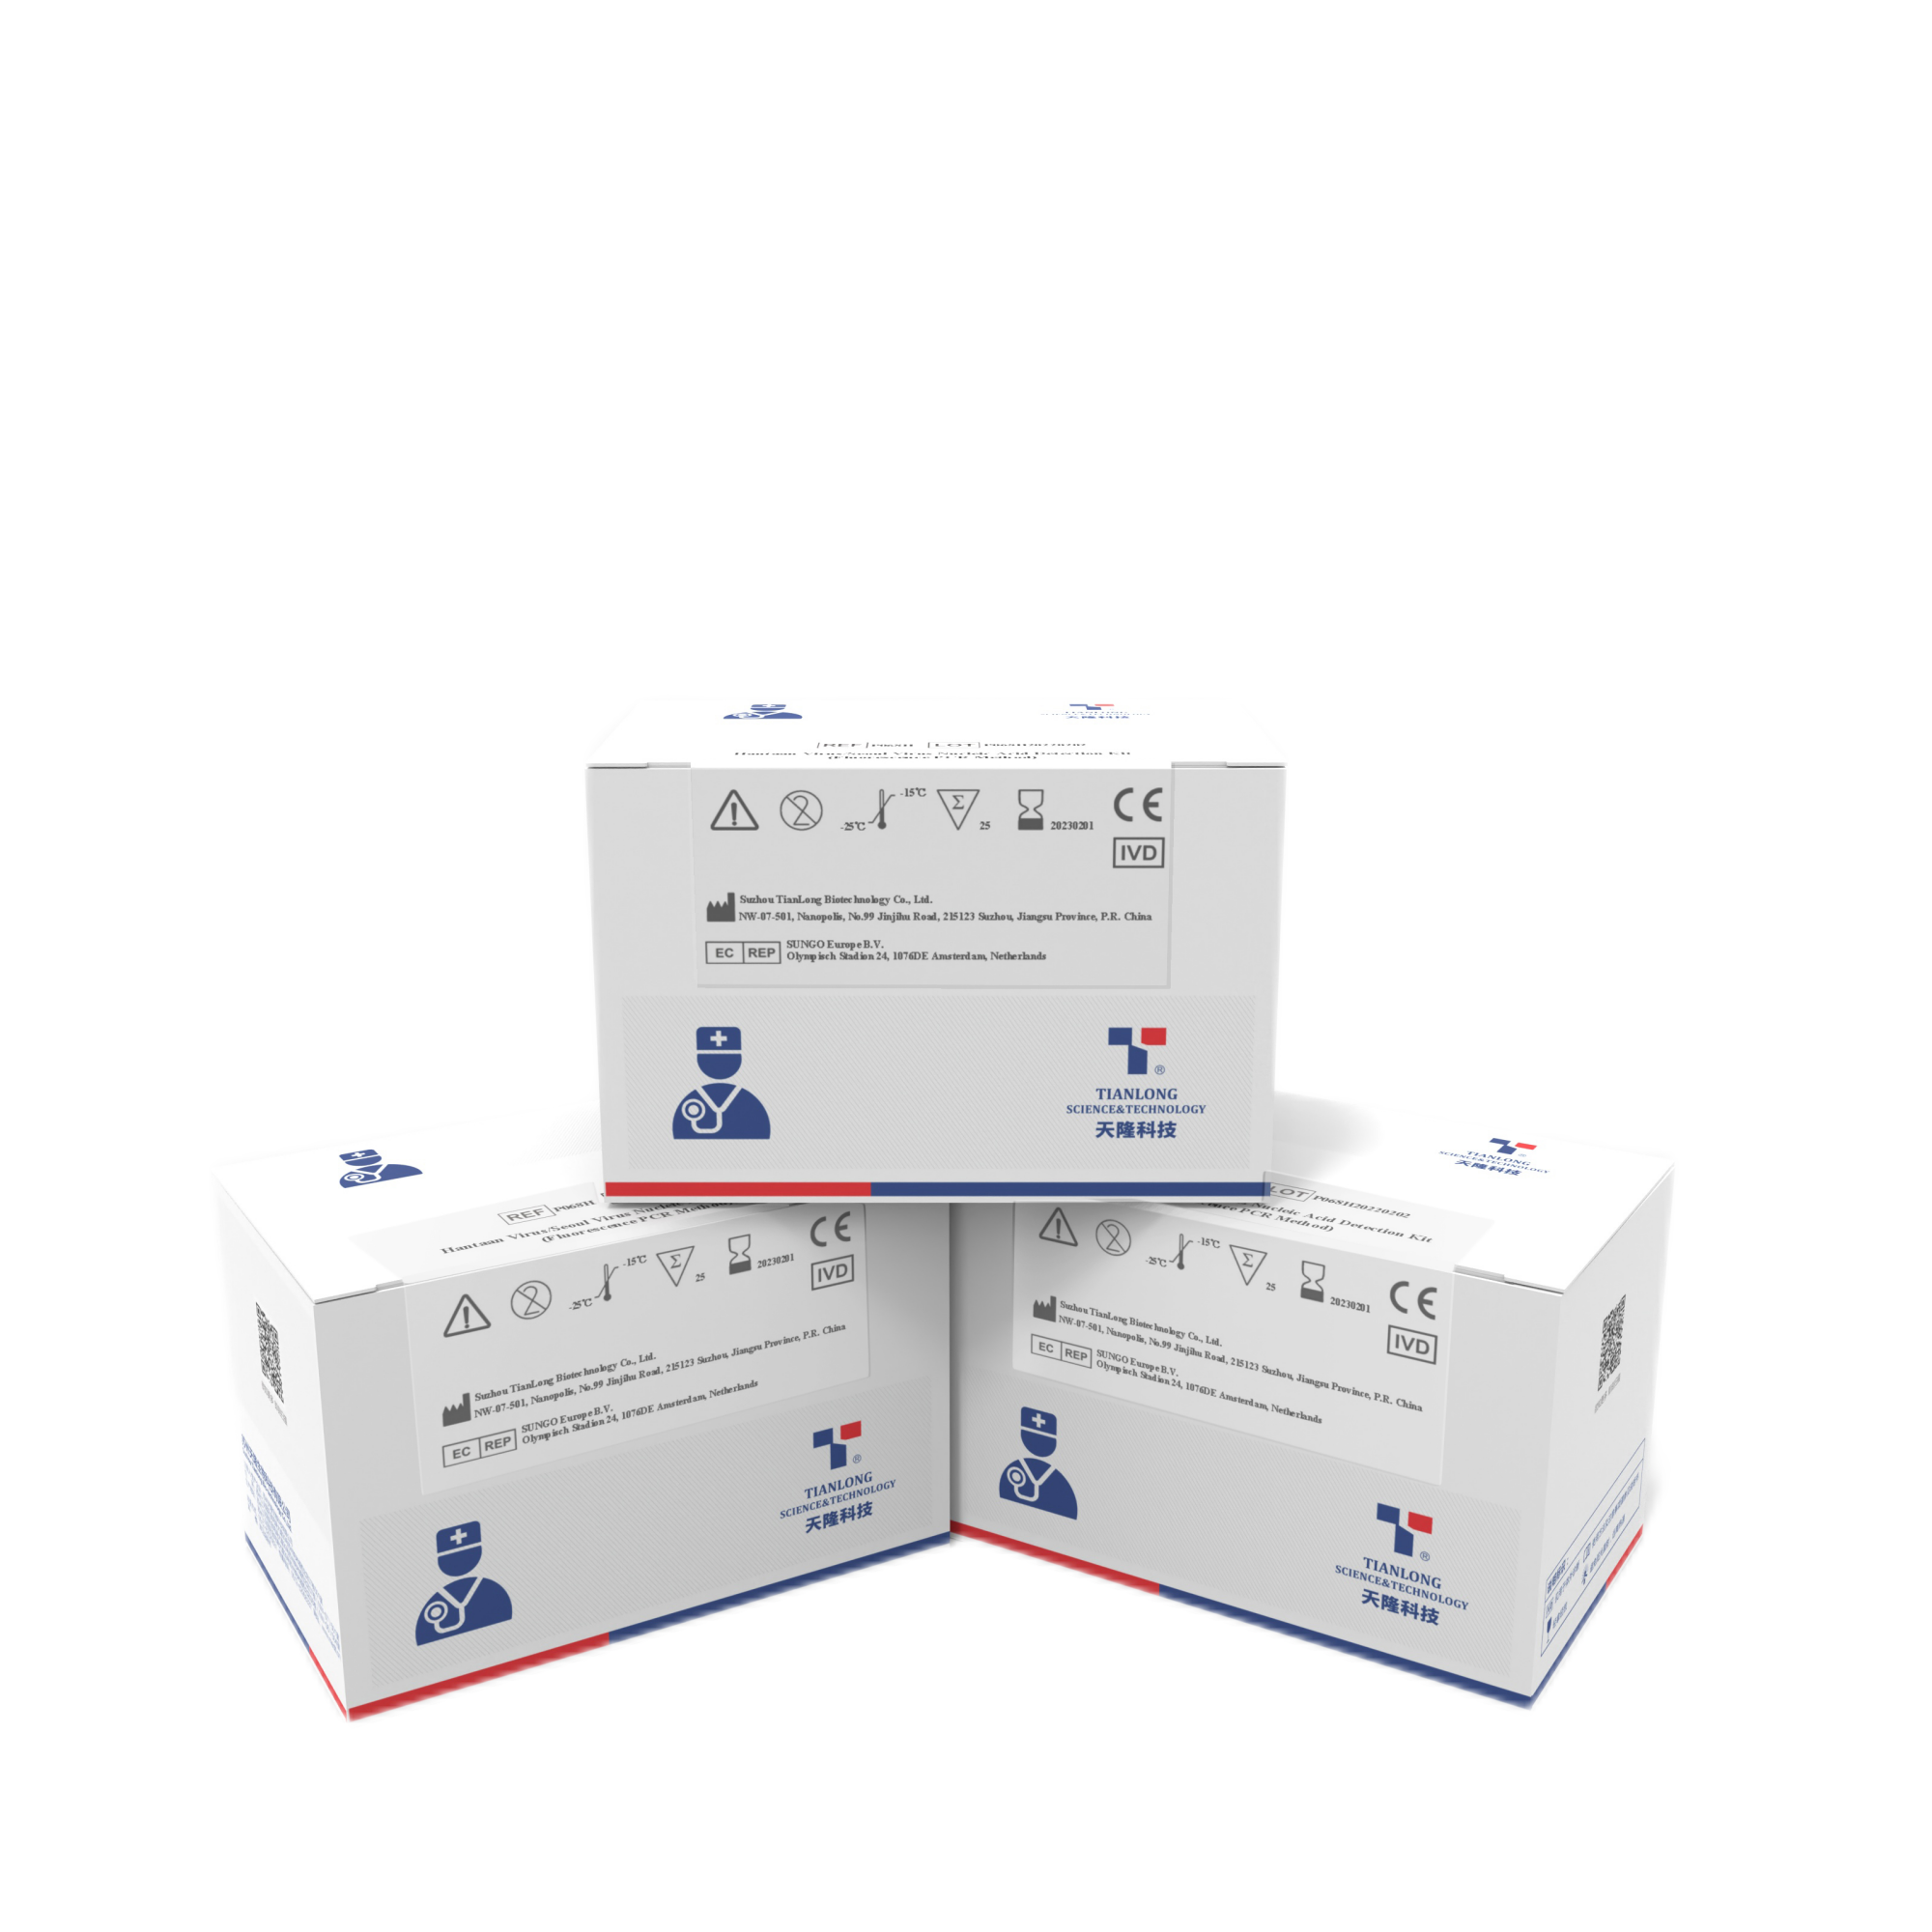 P068H - Kit de détection des acides nucléiques du virus Hantaan / virus de Séoul